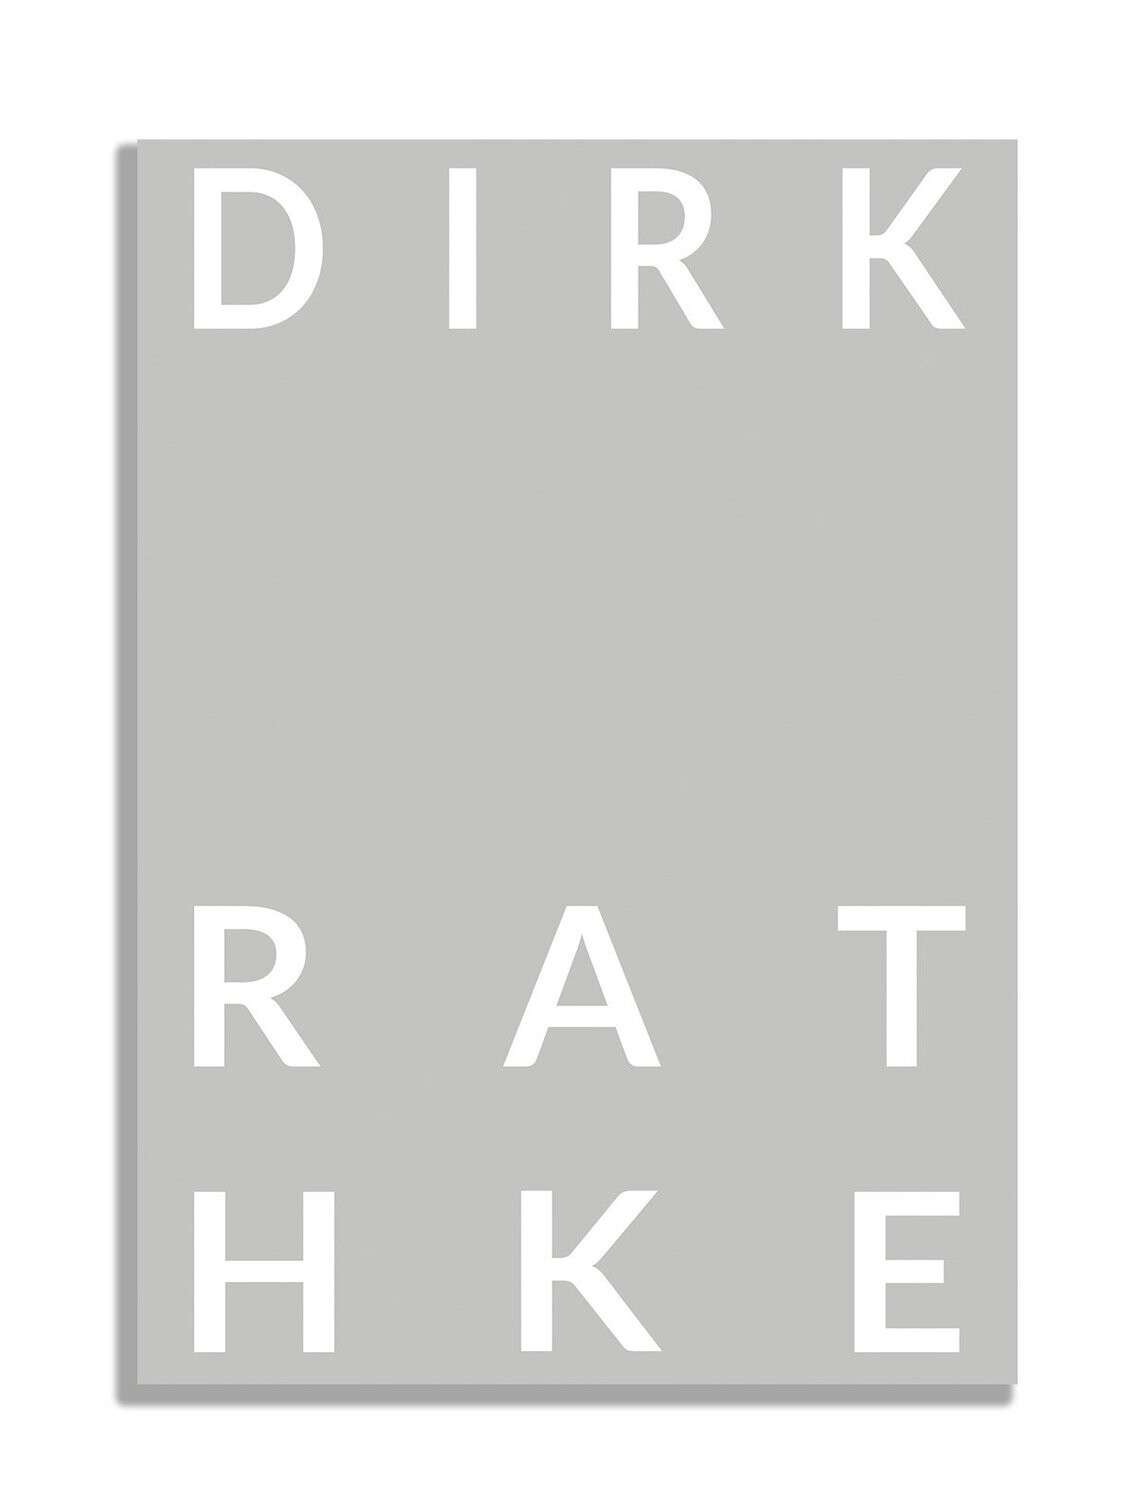 Dirk Rathke